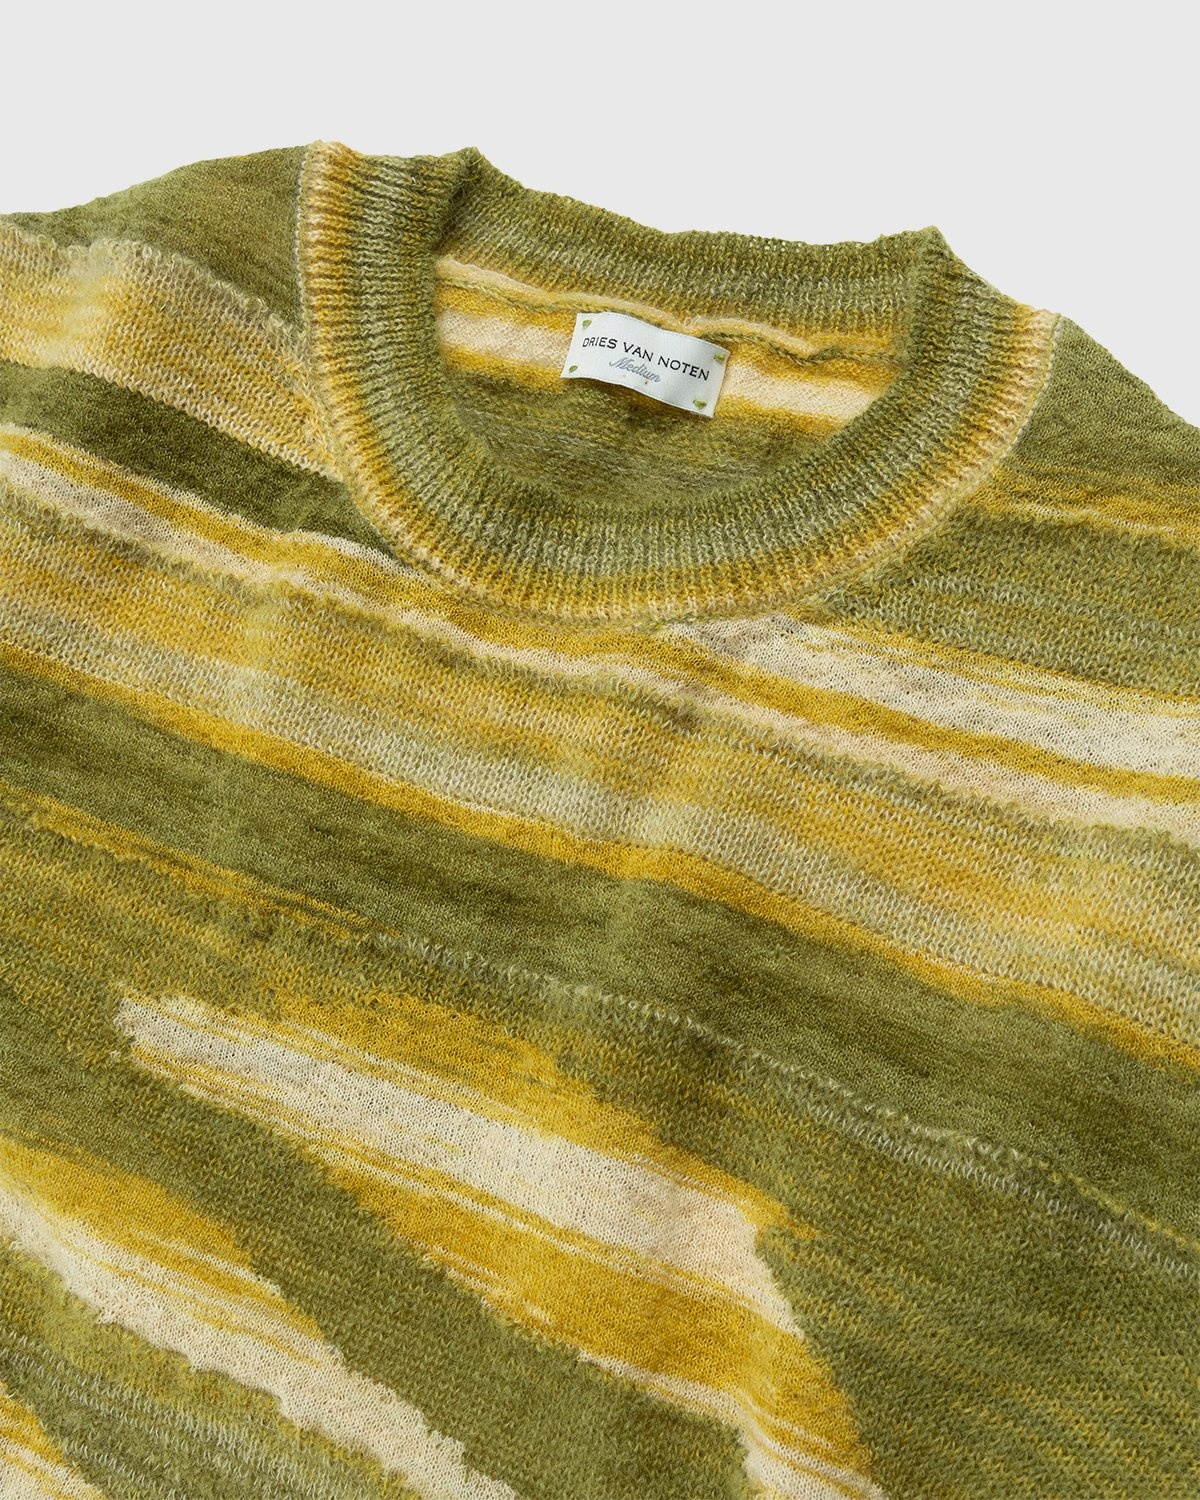 Dries van Noten – Jamino Sweater Yellow - Knitwear - Yellow - Image 3